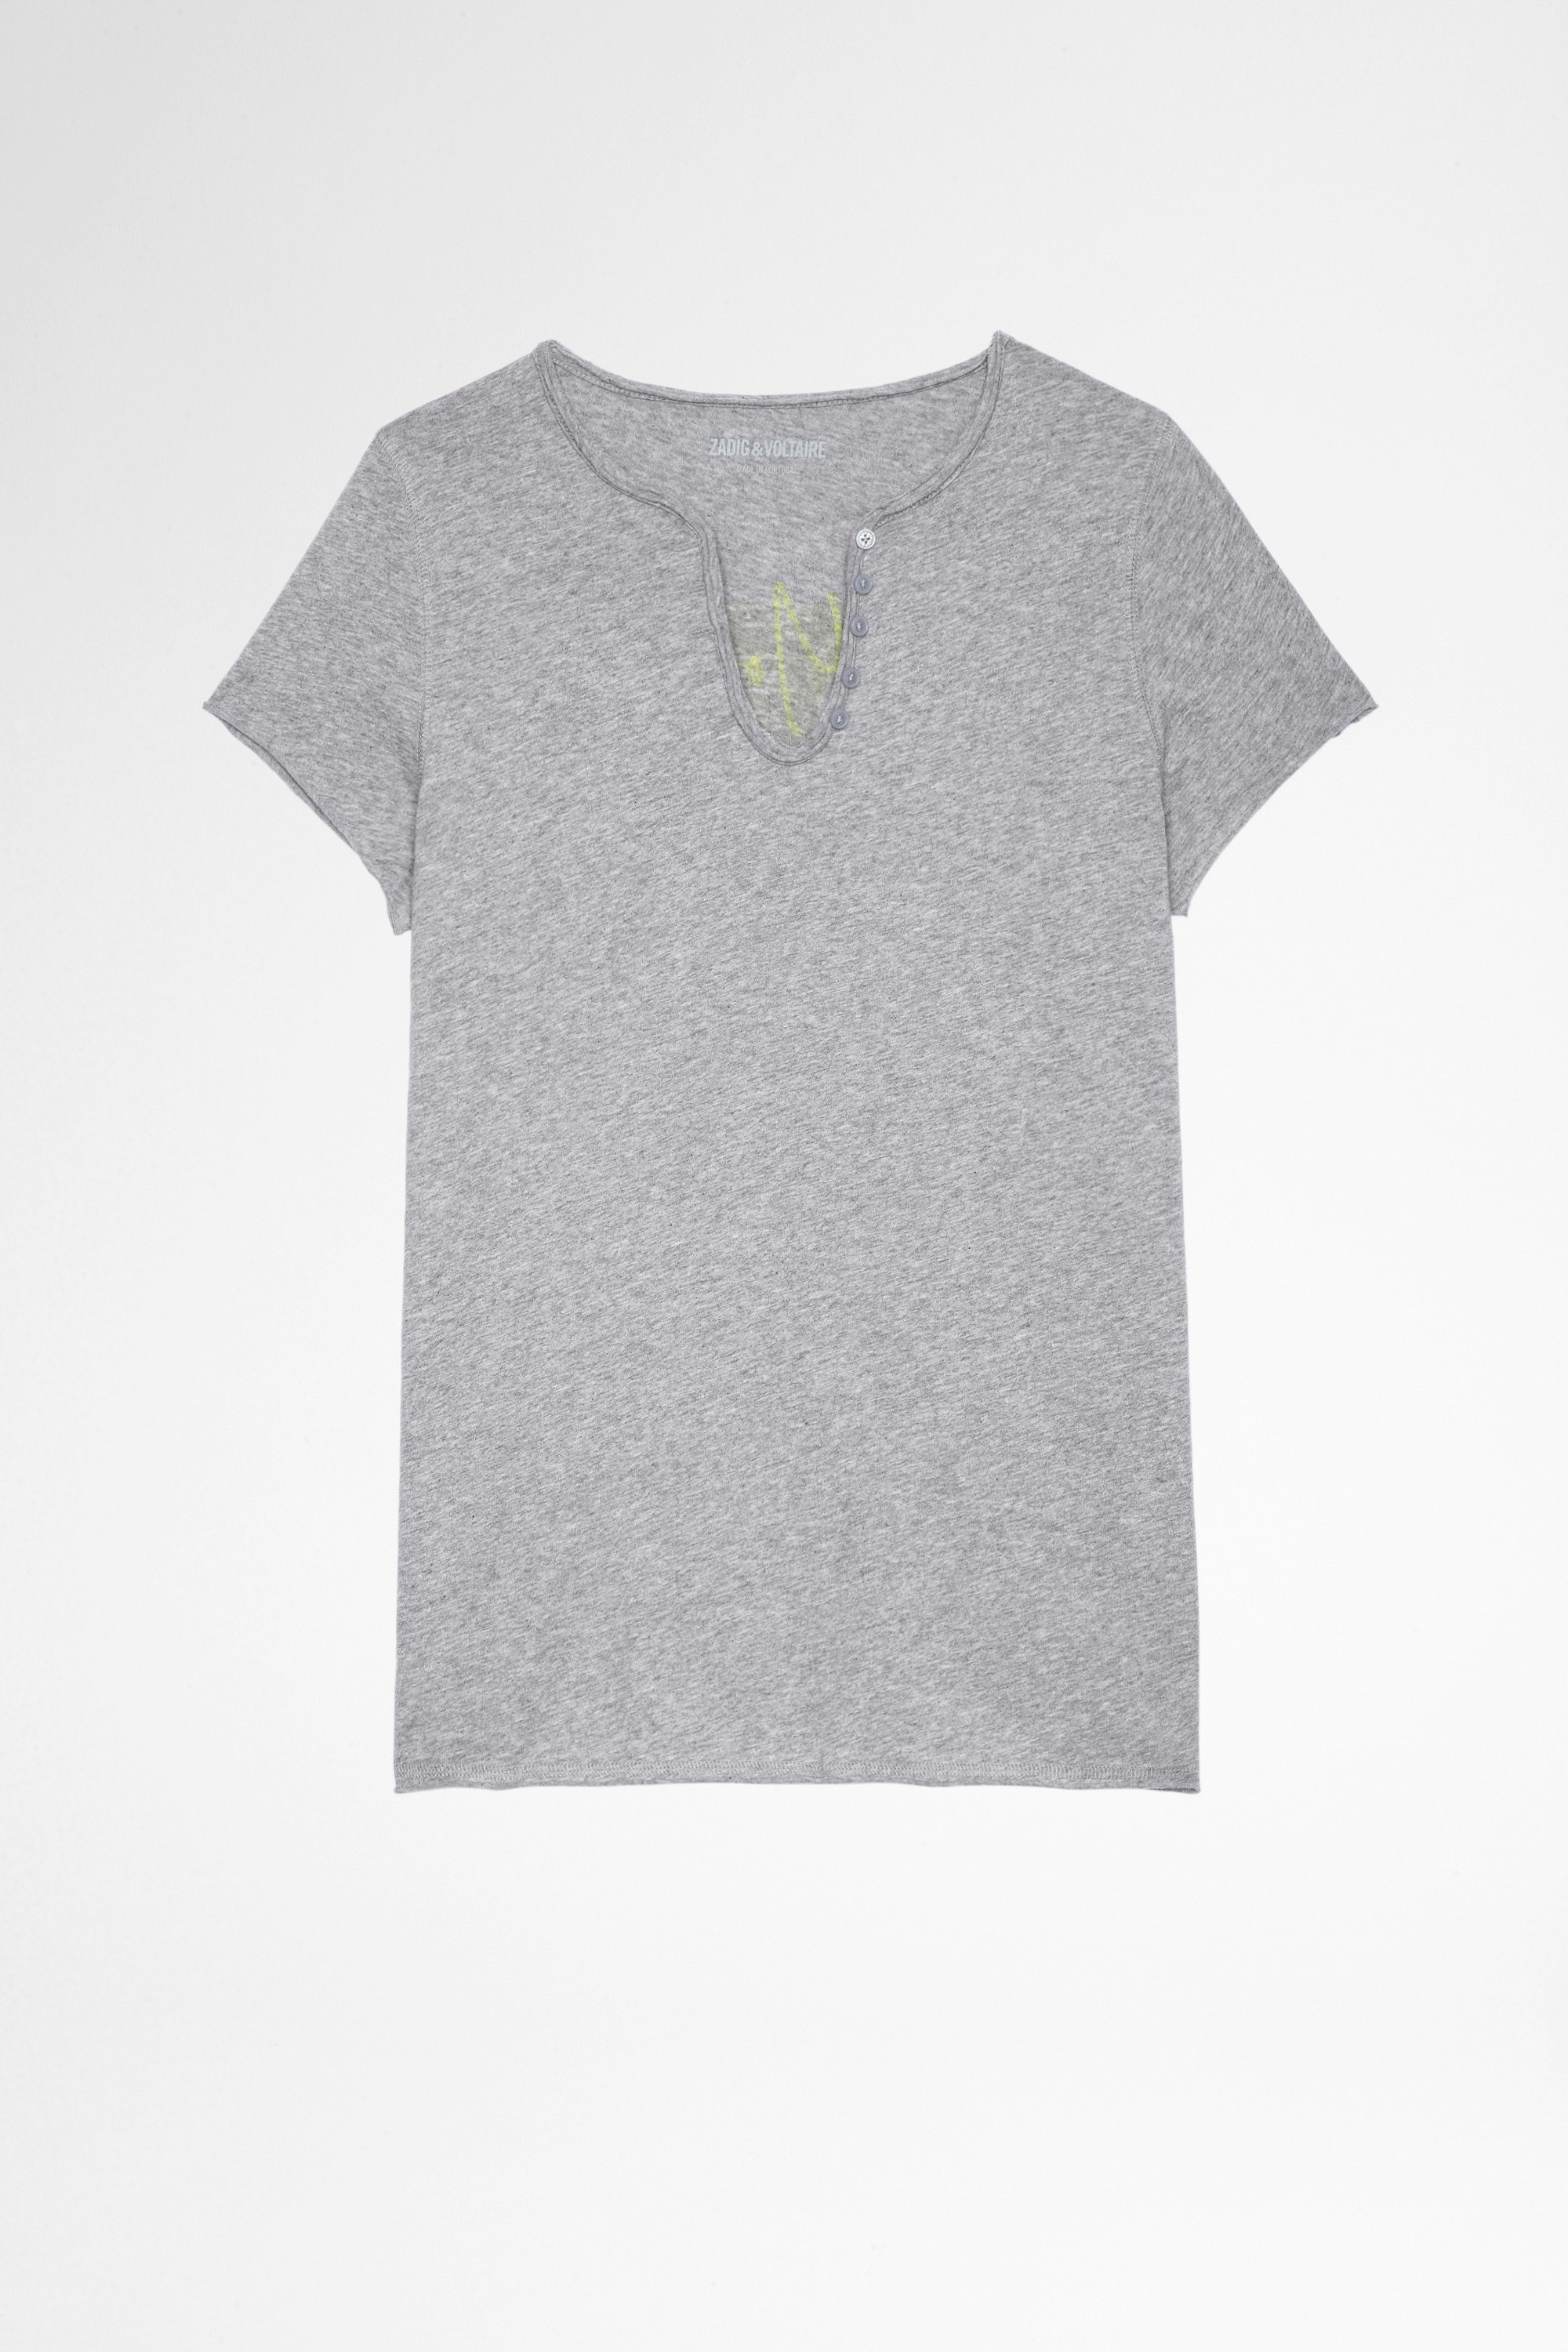 T-shirt Tunisien Photoprint T-shirt in cotone grigio con collo a serafino e stampa fotografica sulla schiena, donna. Reallizzato con fibre da agricoltura biologica